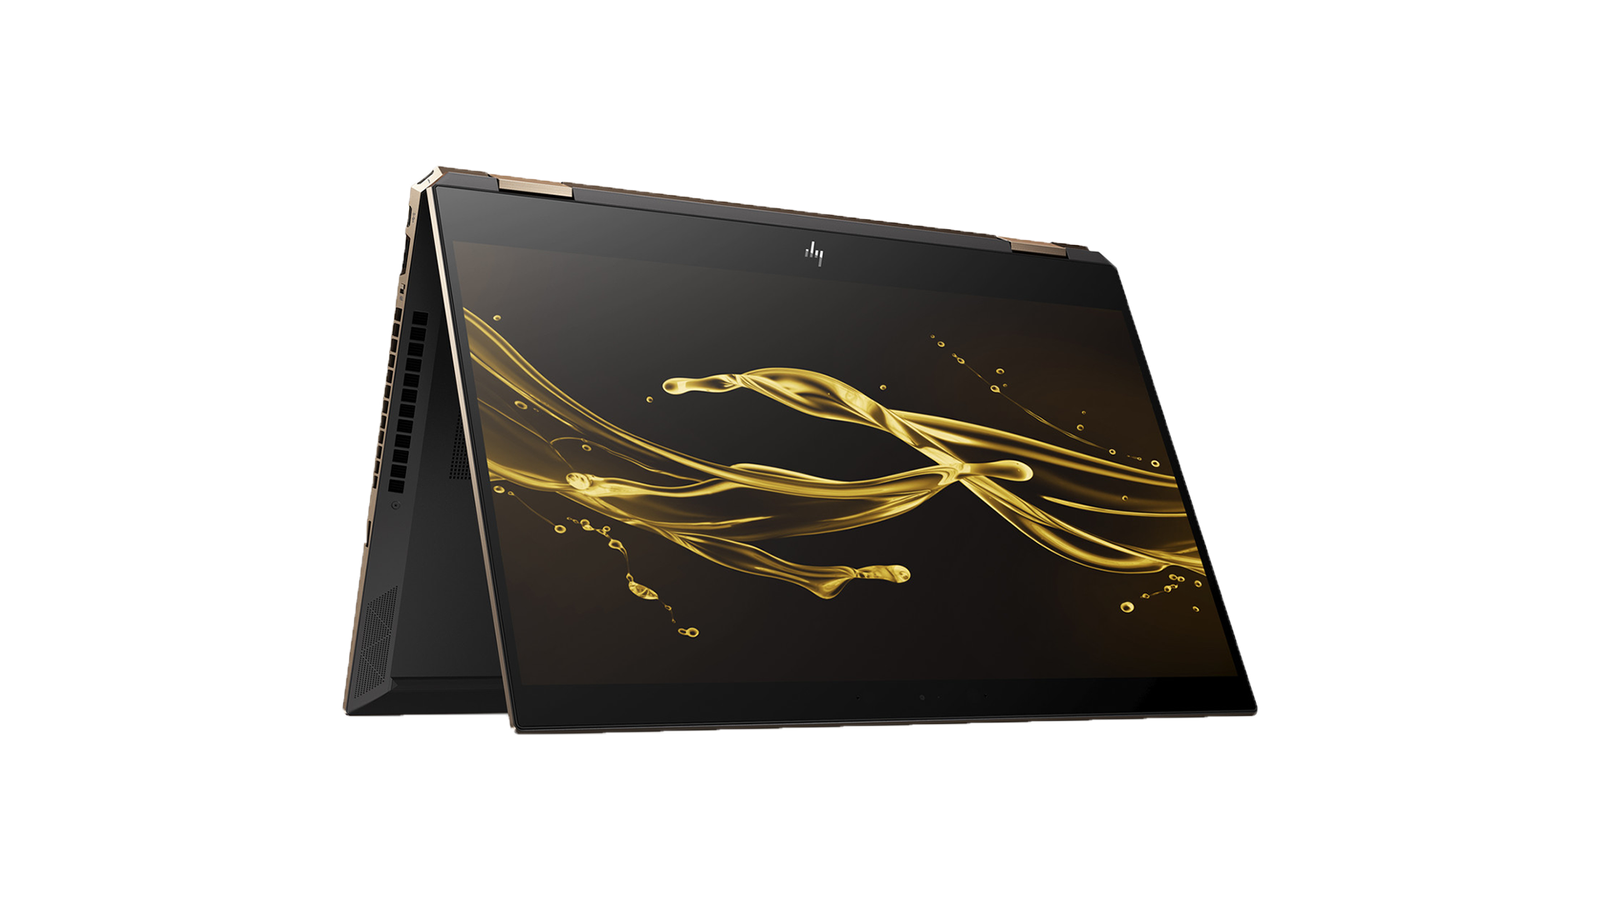 HP Spectre x360 - The best 2-in-1 Windows laptop